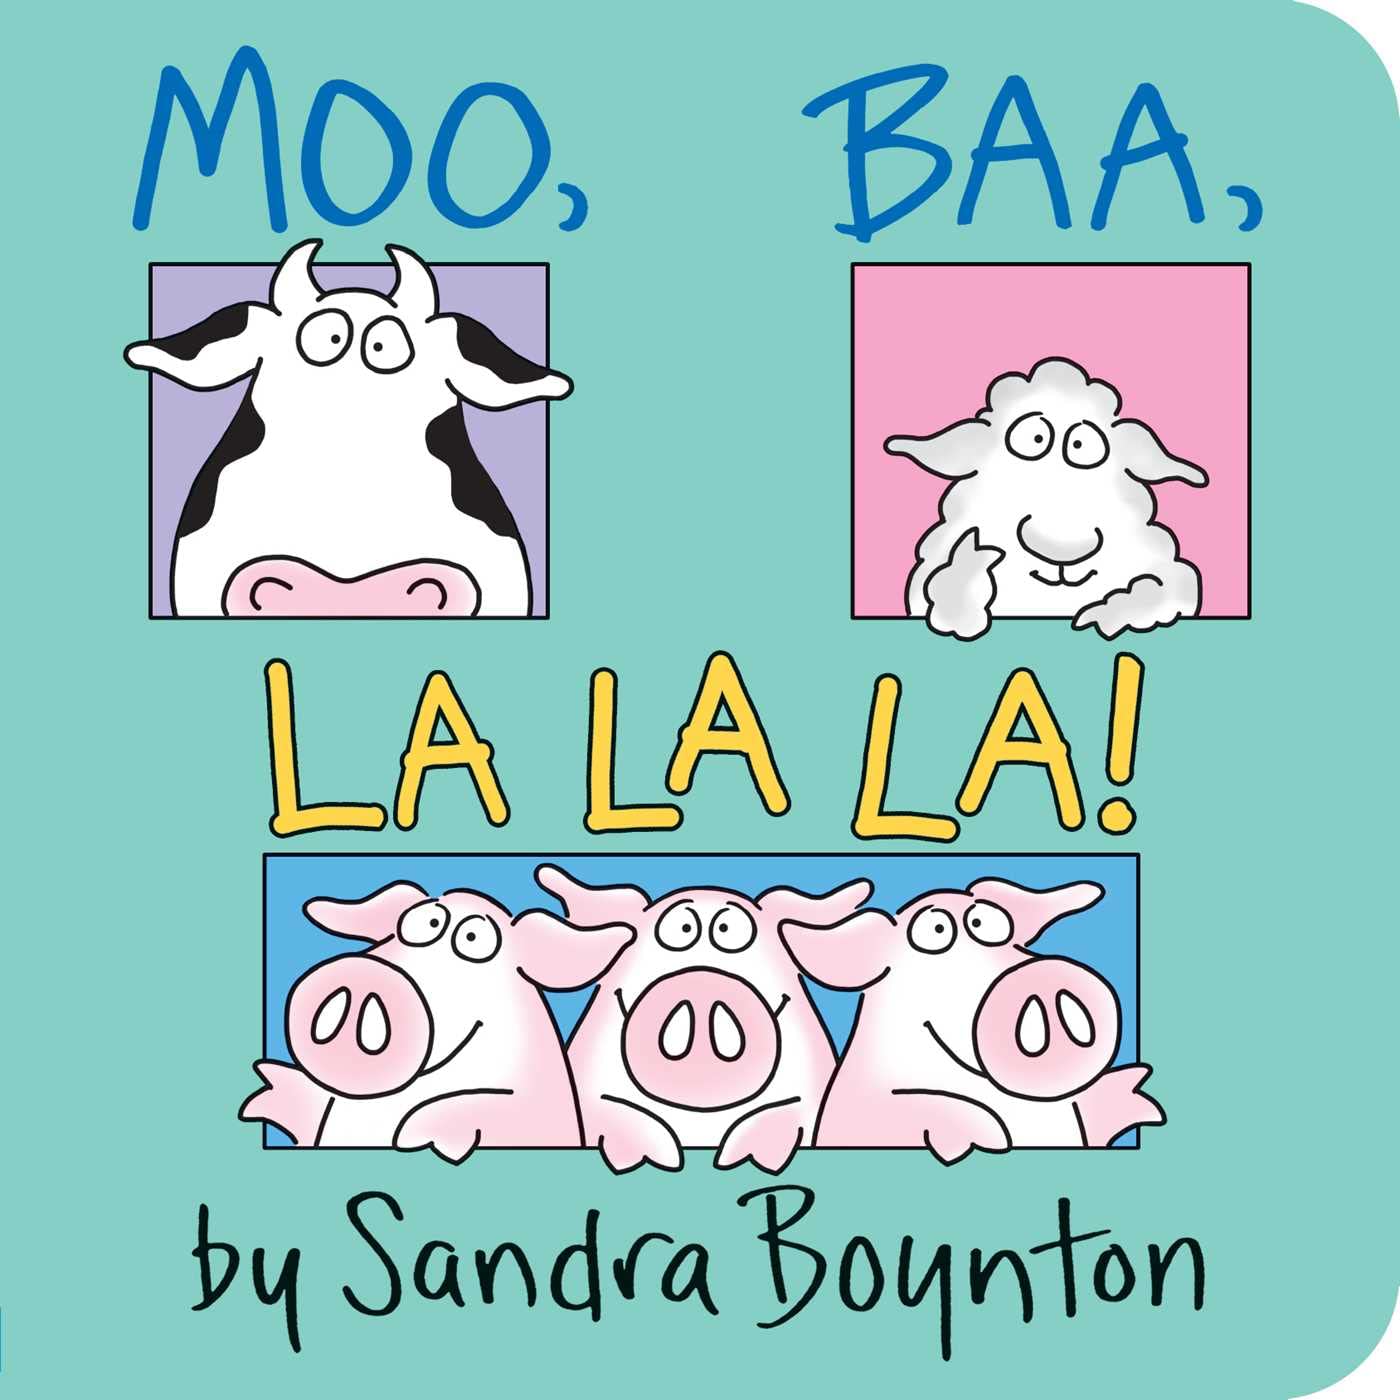 "Moo, Baa, La La La!" by Sandra Boynton